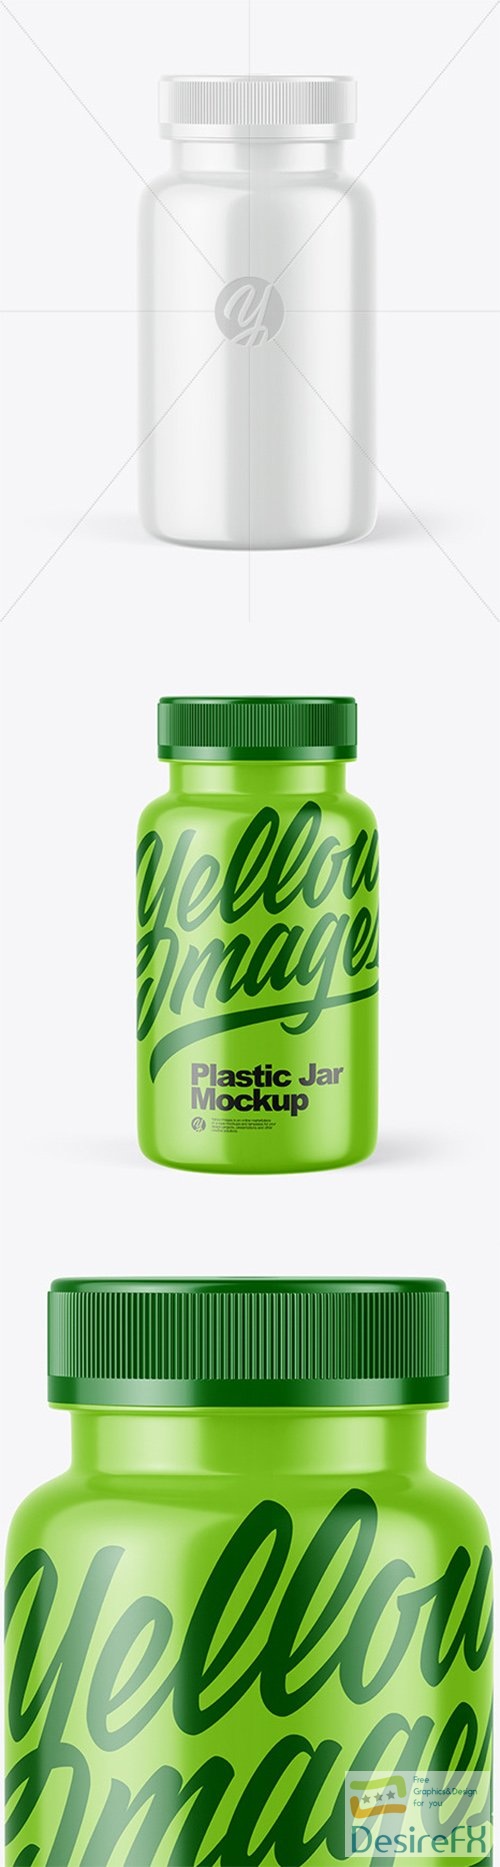 Glossy Plastic Jar Mockup 79231 TIF